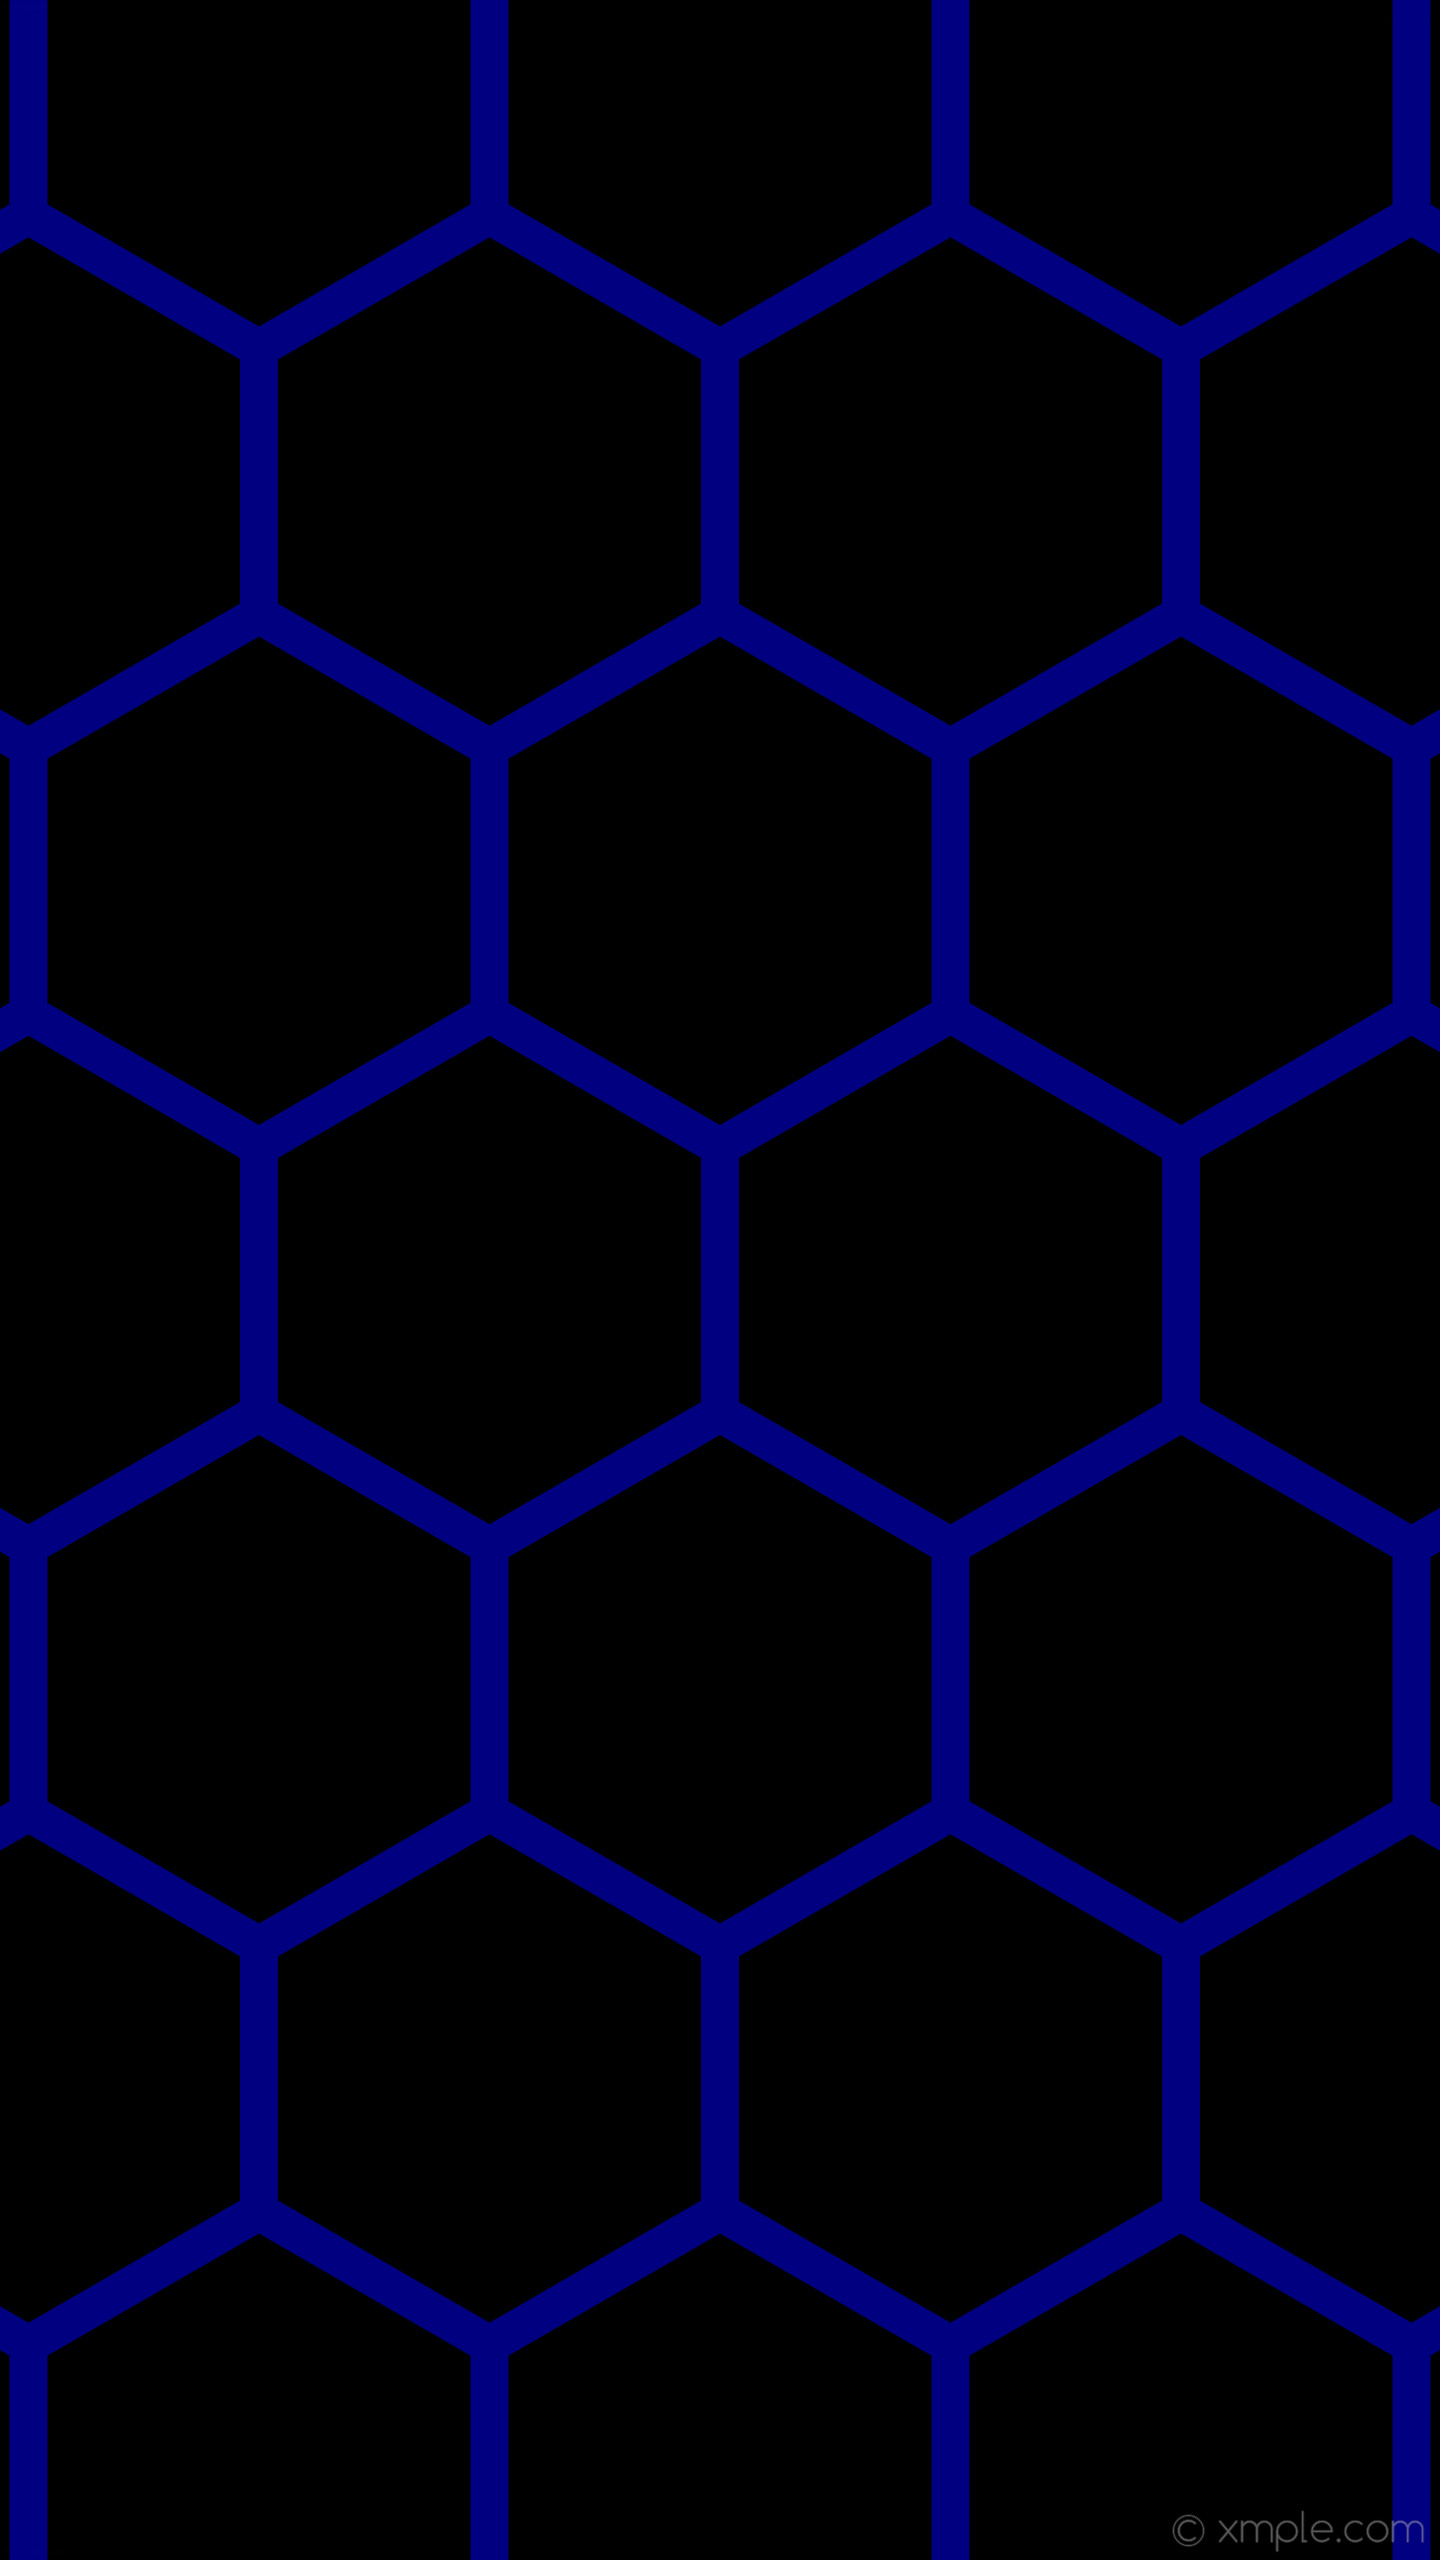 1440x2560 wallpaper beehive honeycomb blue hexagon black navy #000000 #000080 0Â° 38px  461px